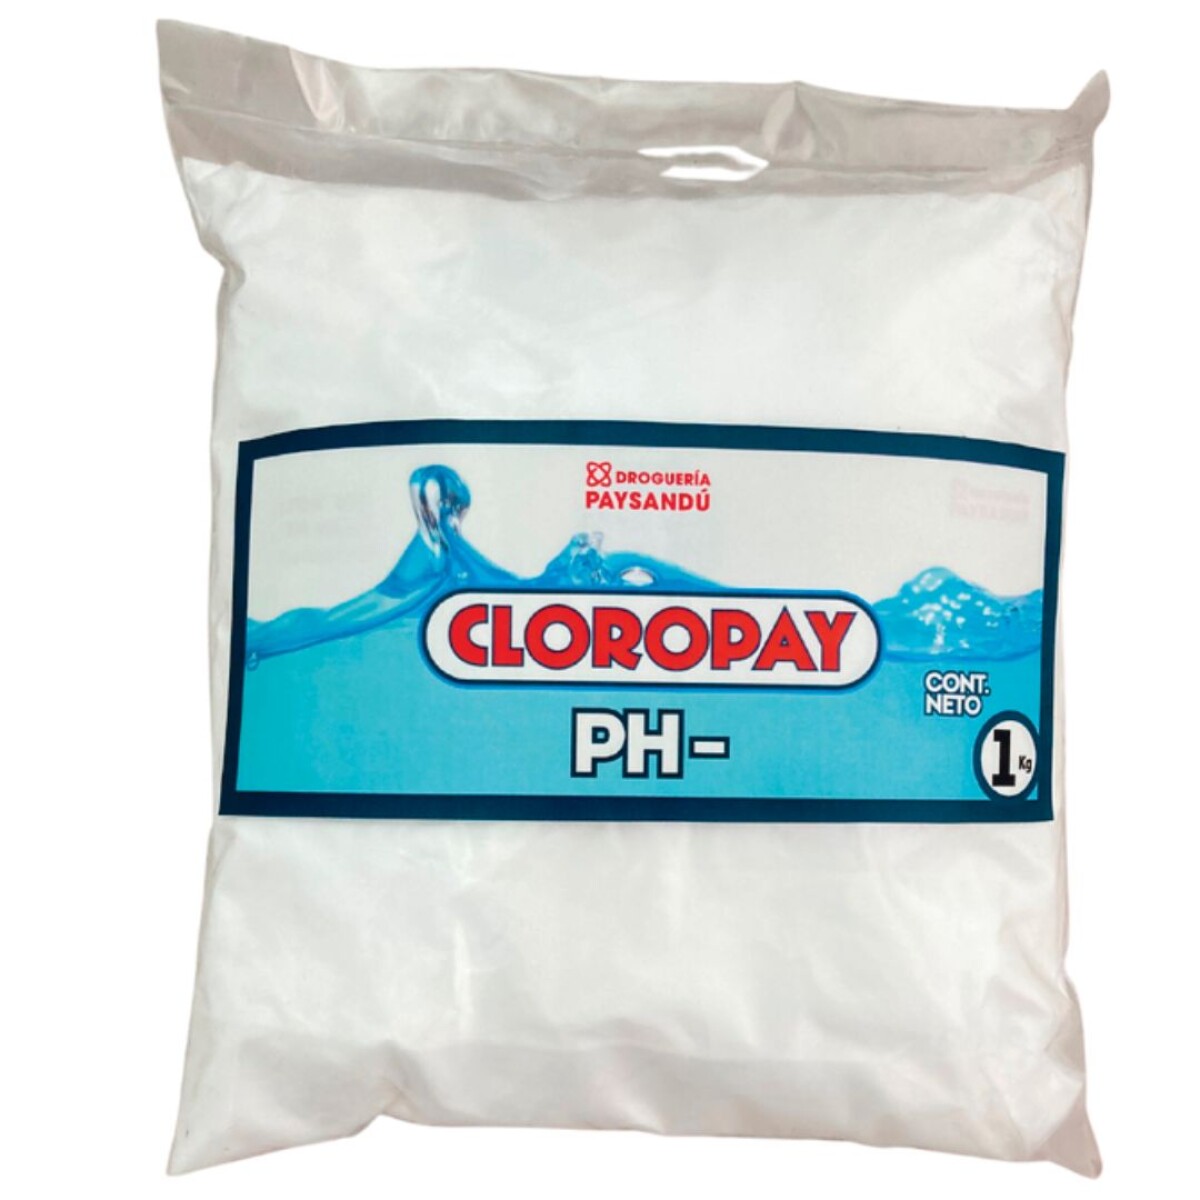 Cloropay pH- 1 Kg 